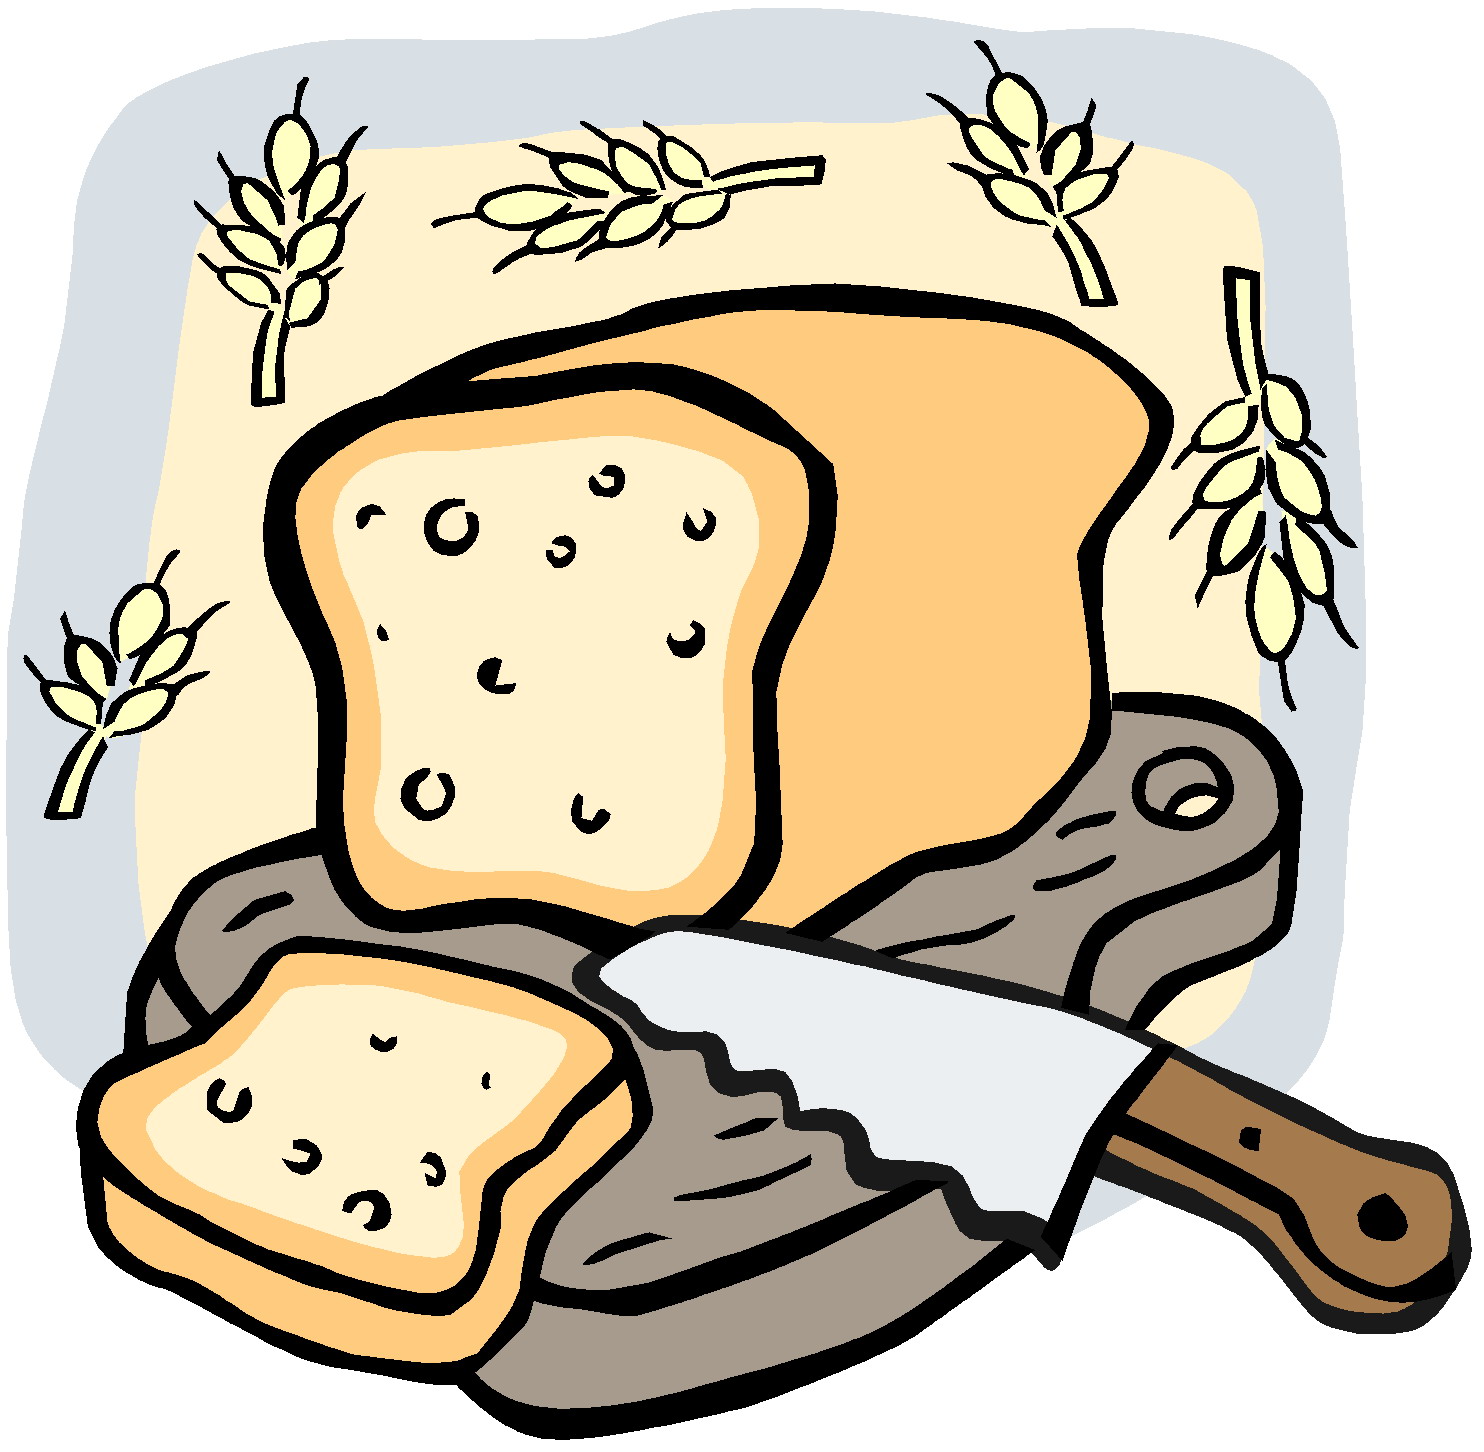 Loaf bread cartoon.